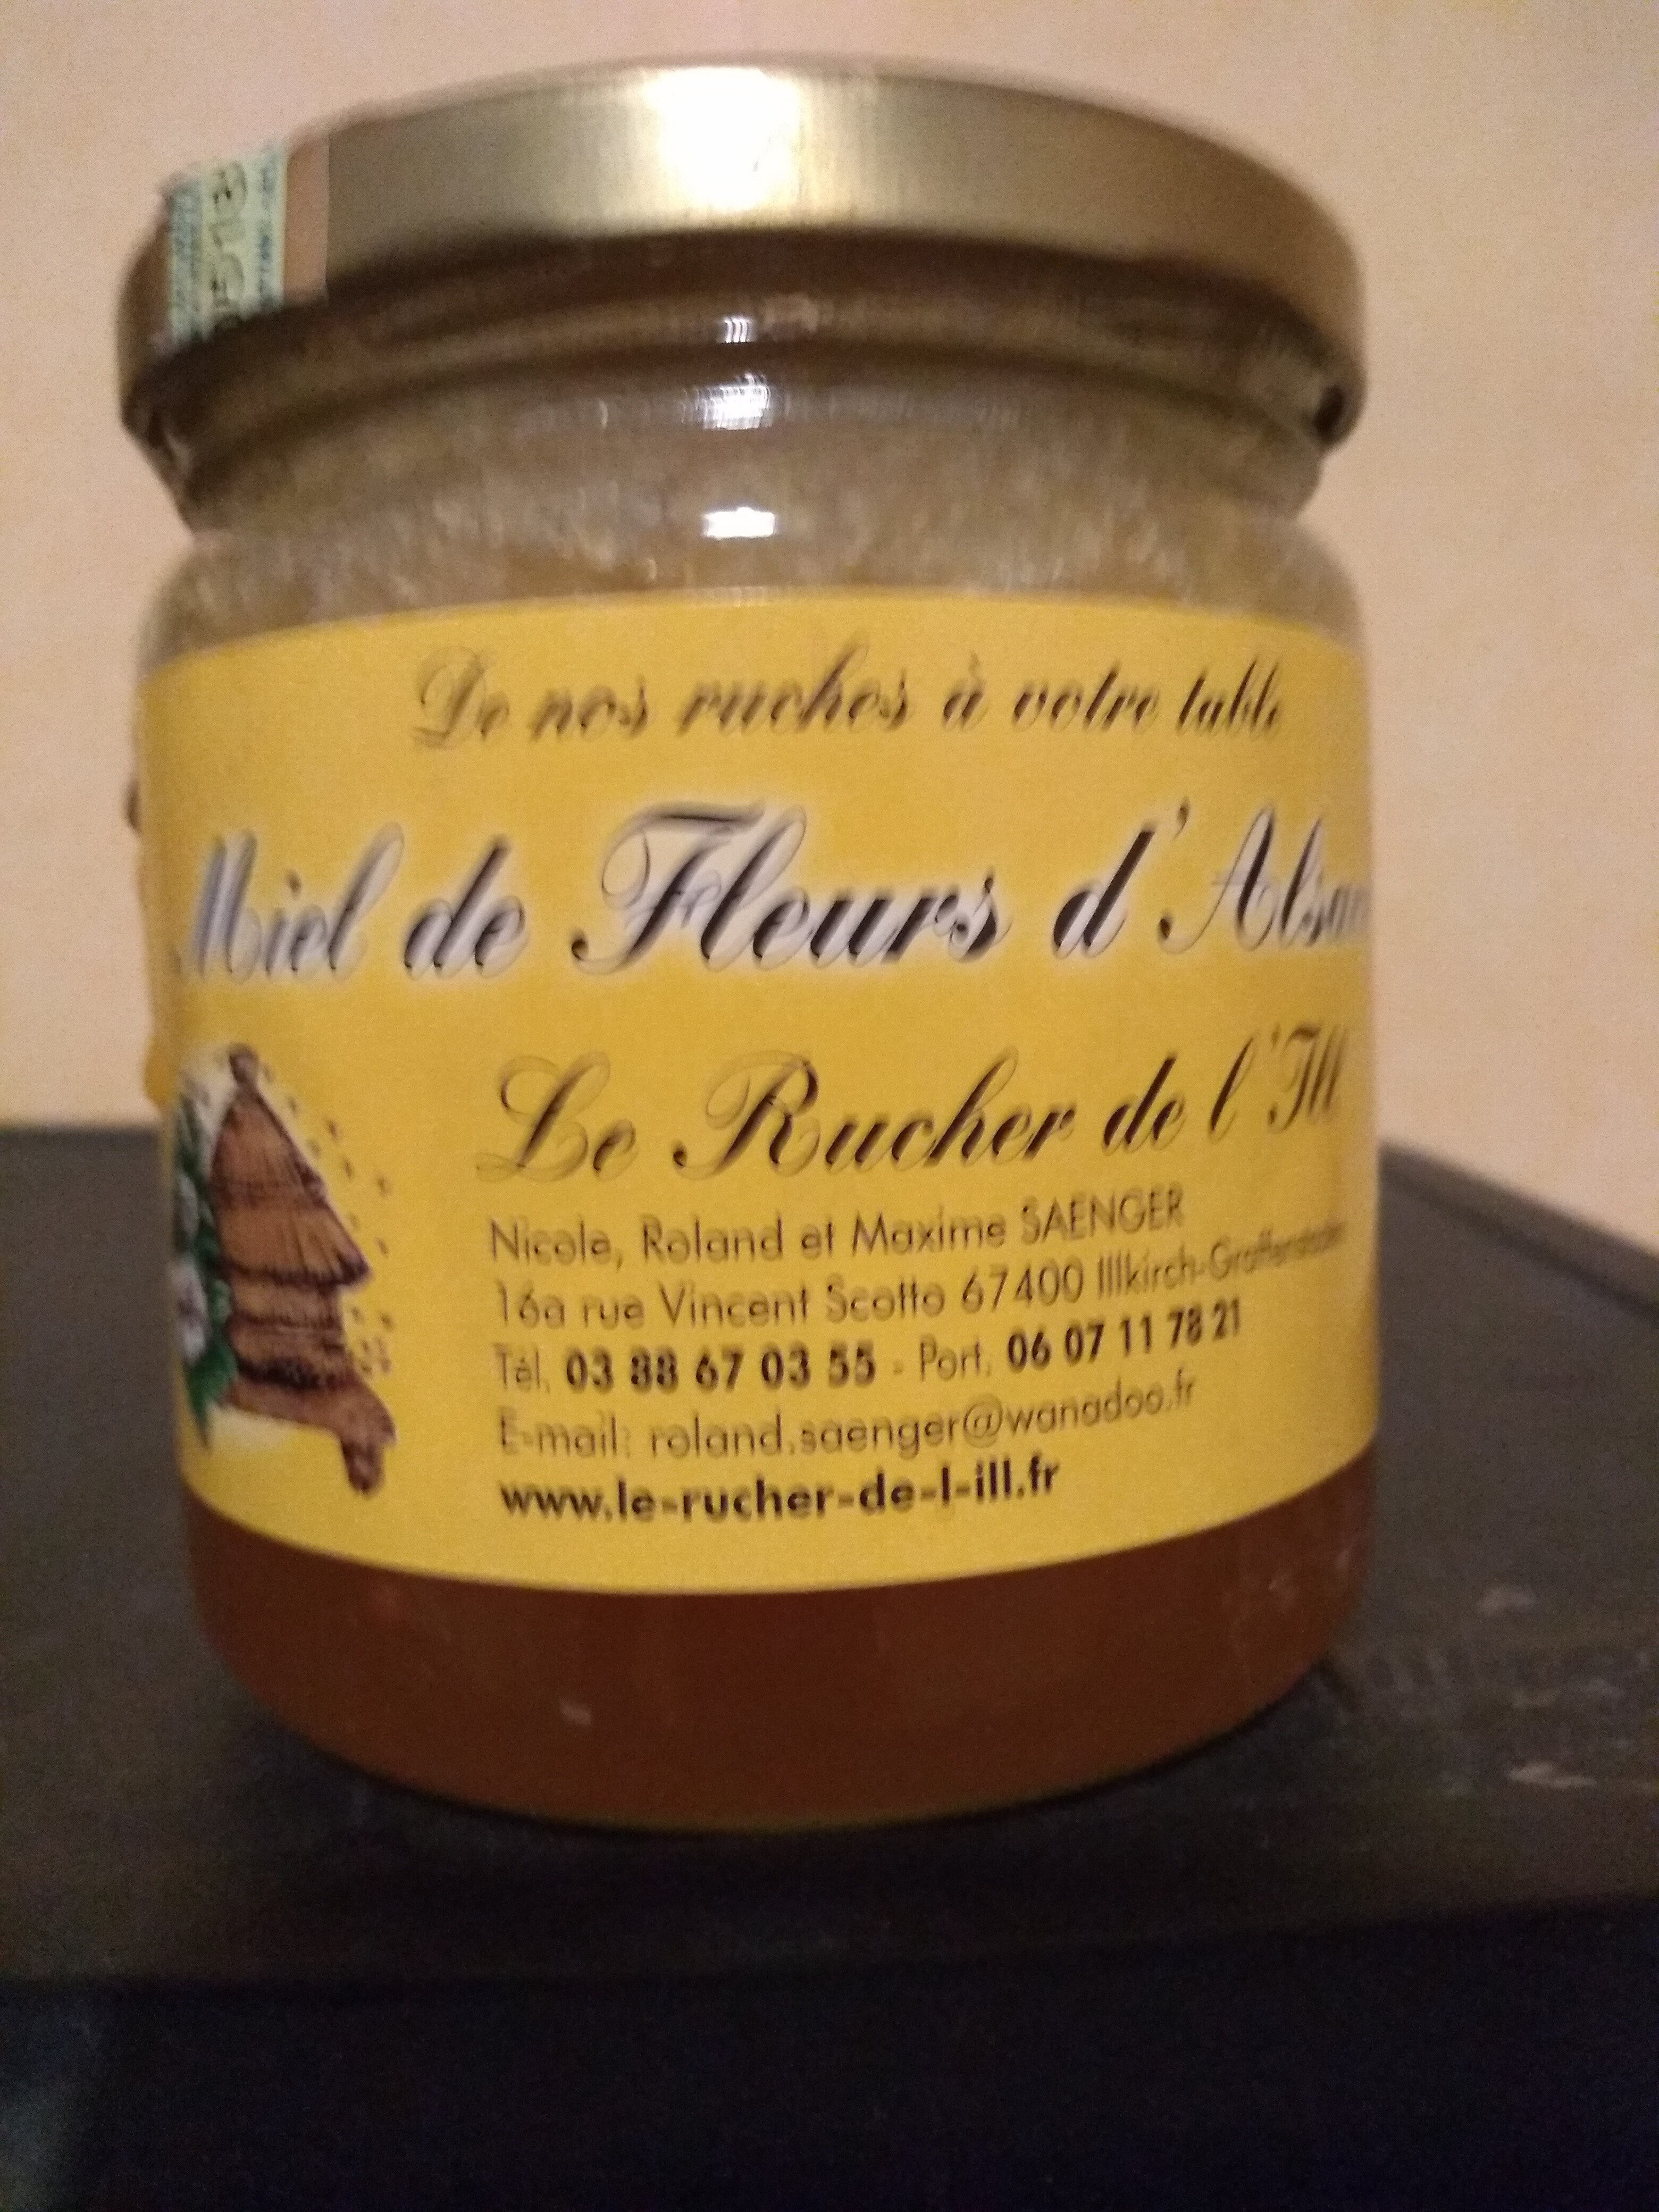 Miel de Fleurs d'Alsace - Product - fr